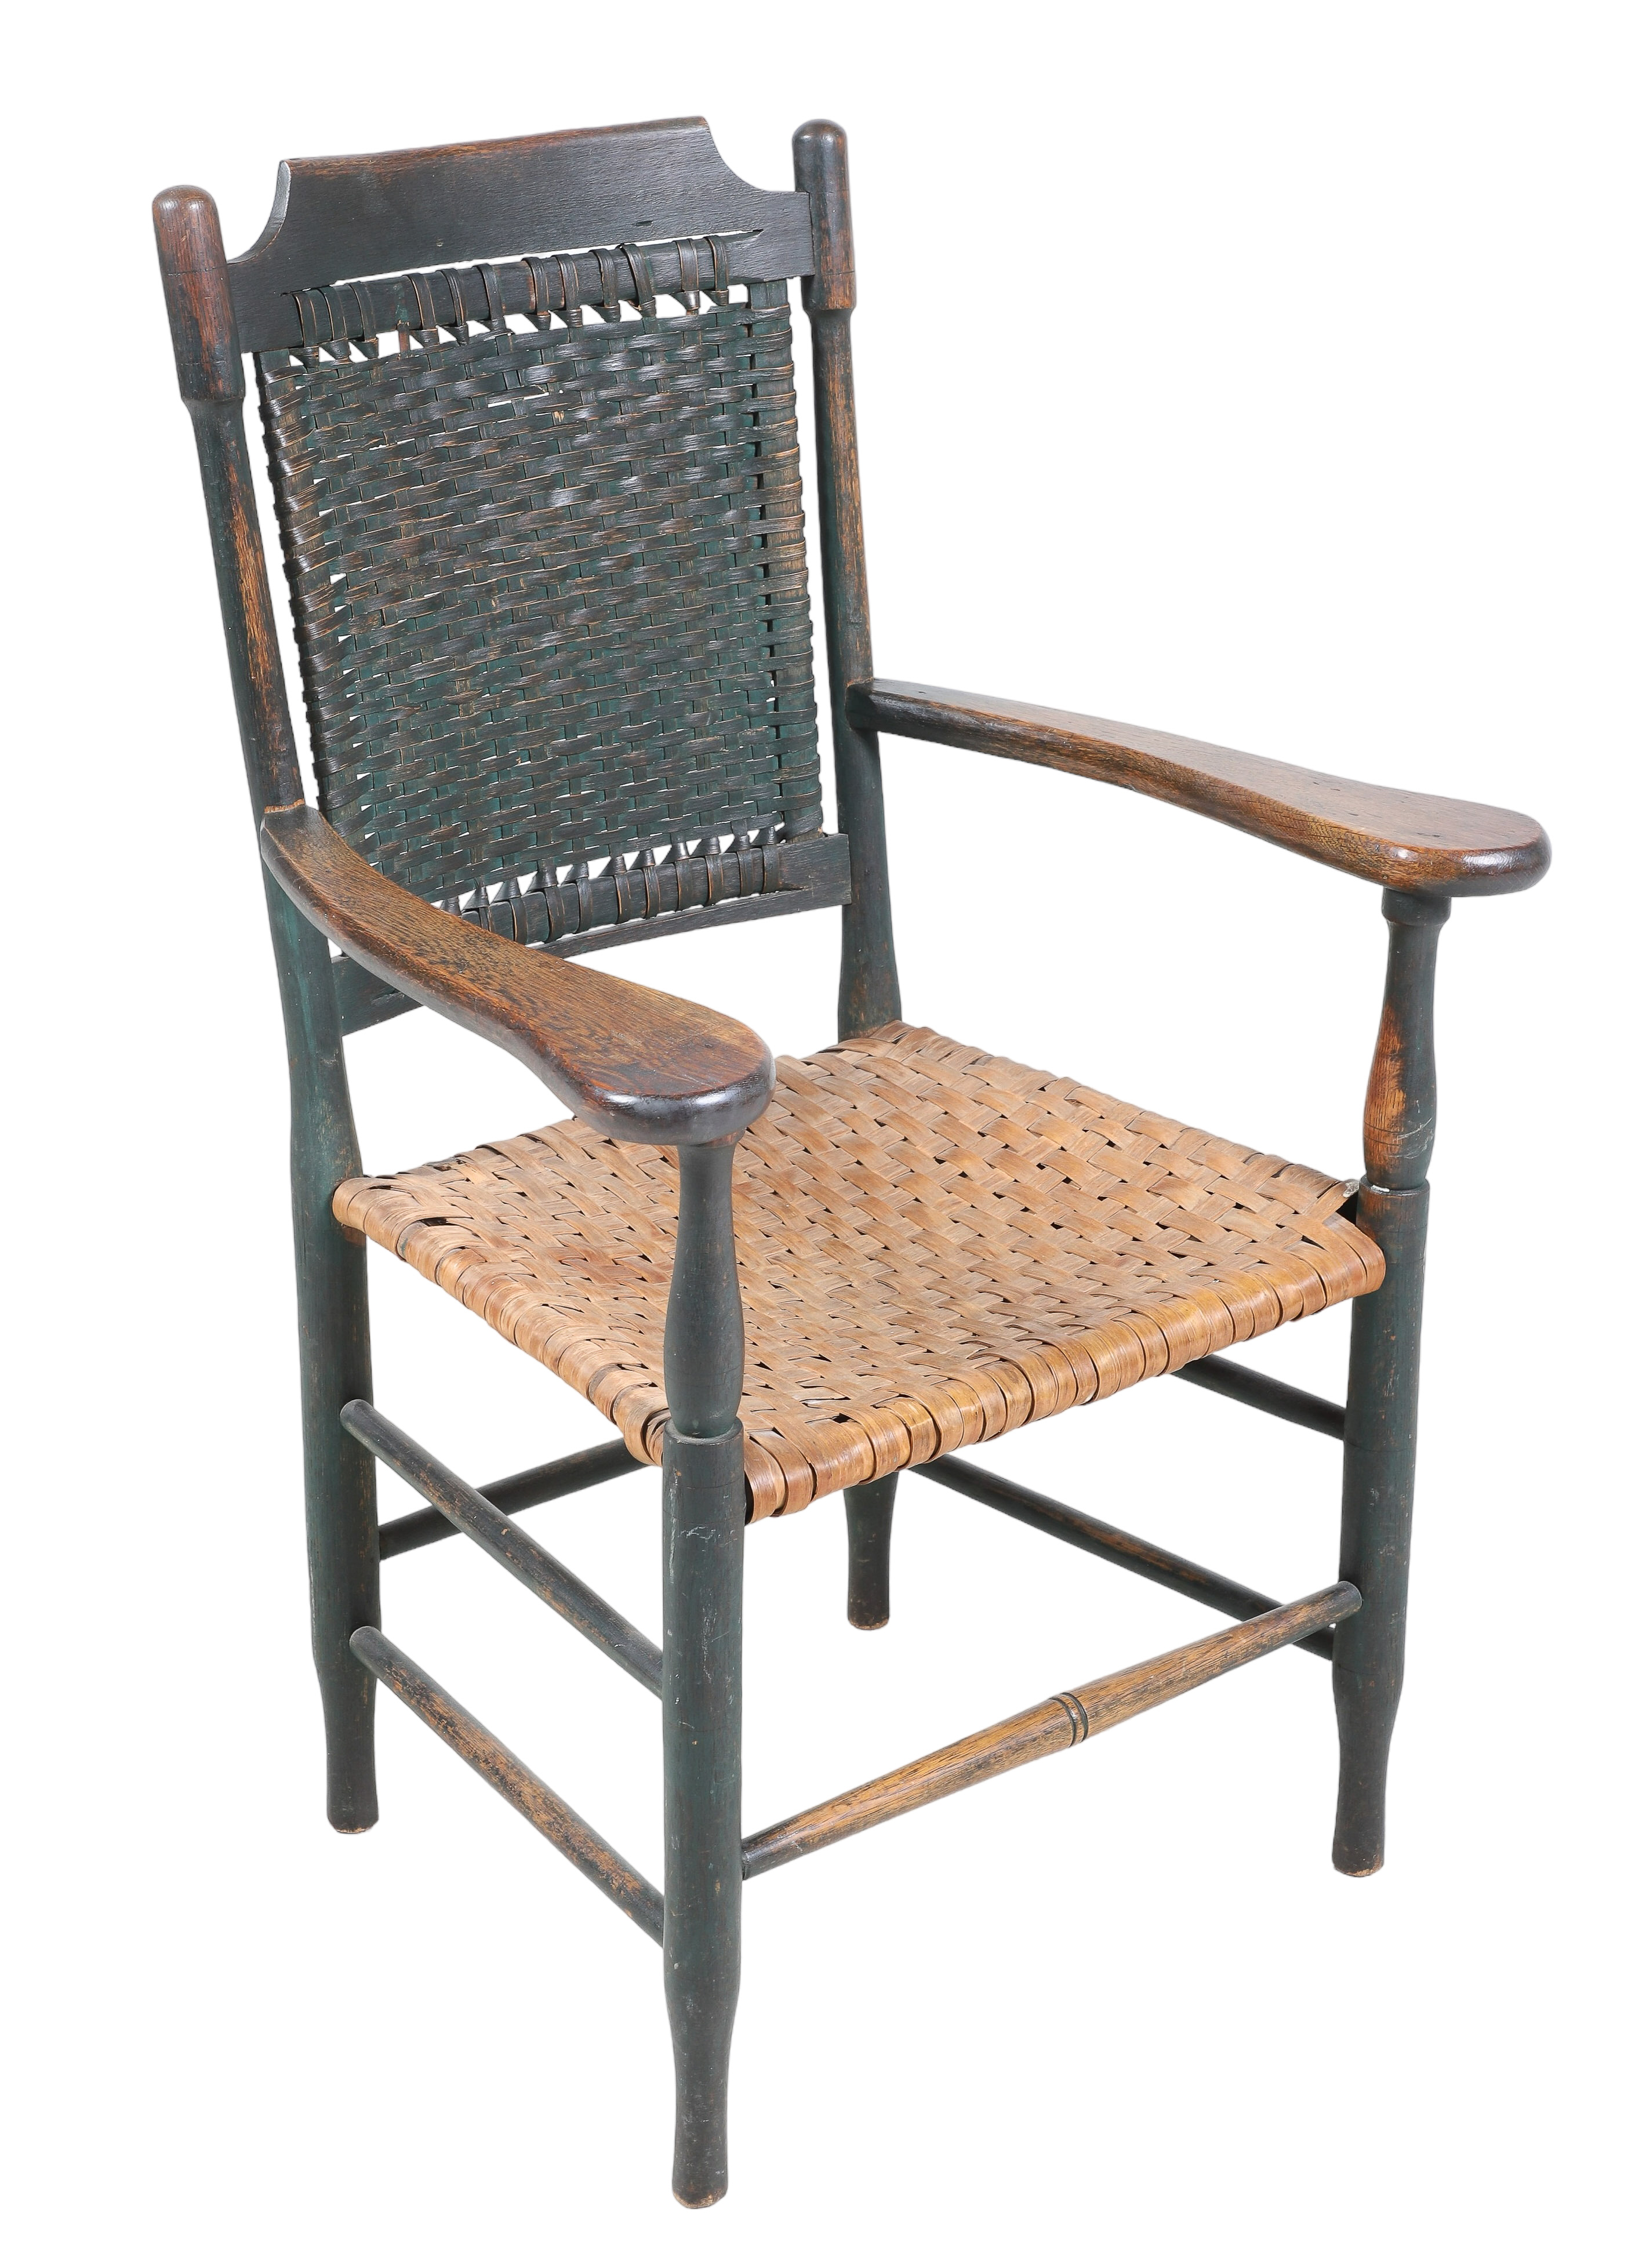 Oak painted woven seat open armchair  2e18b8